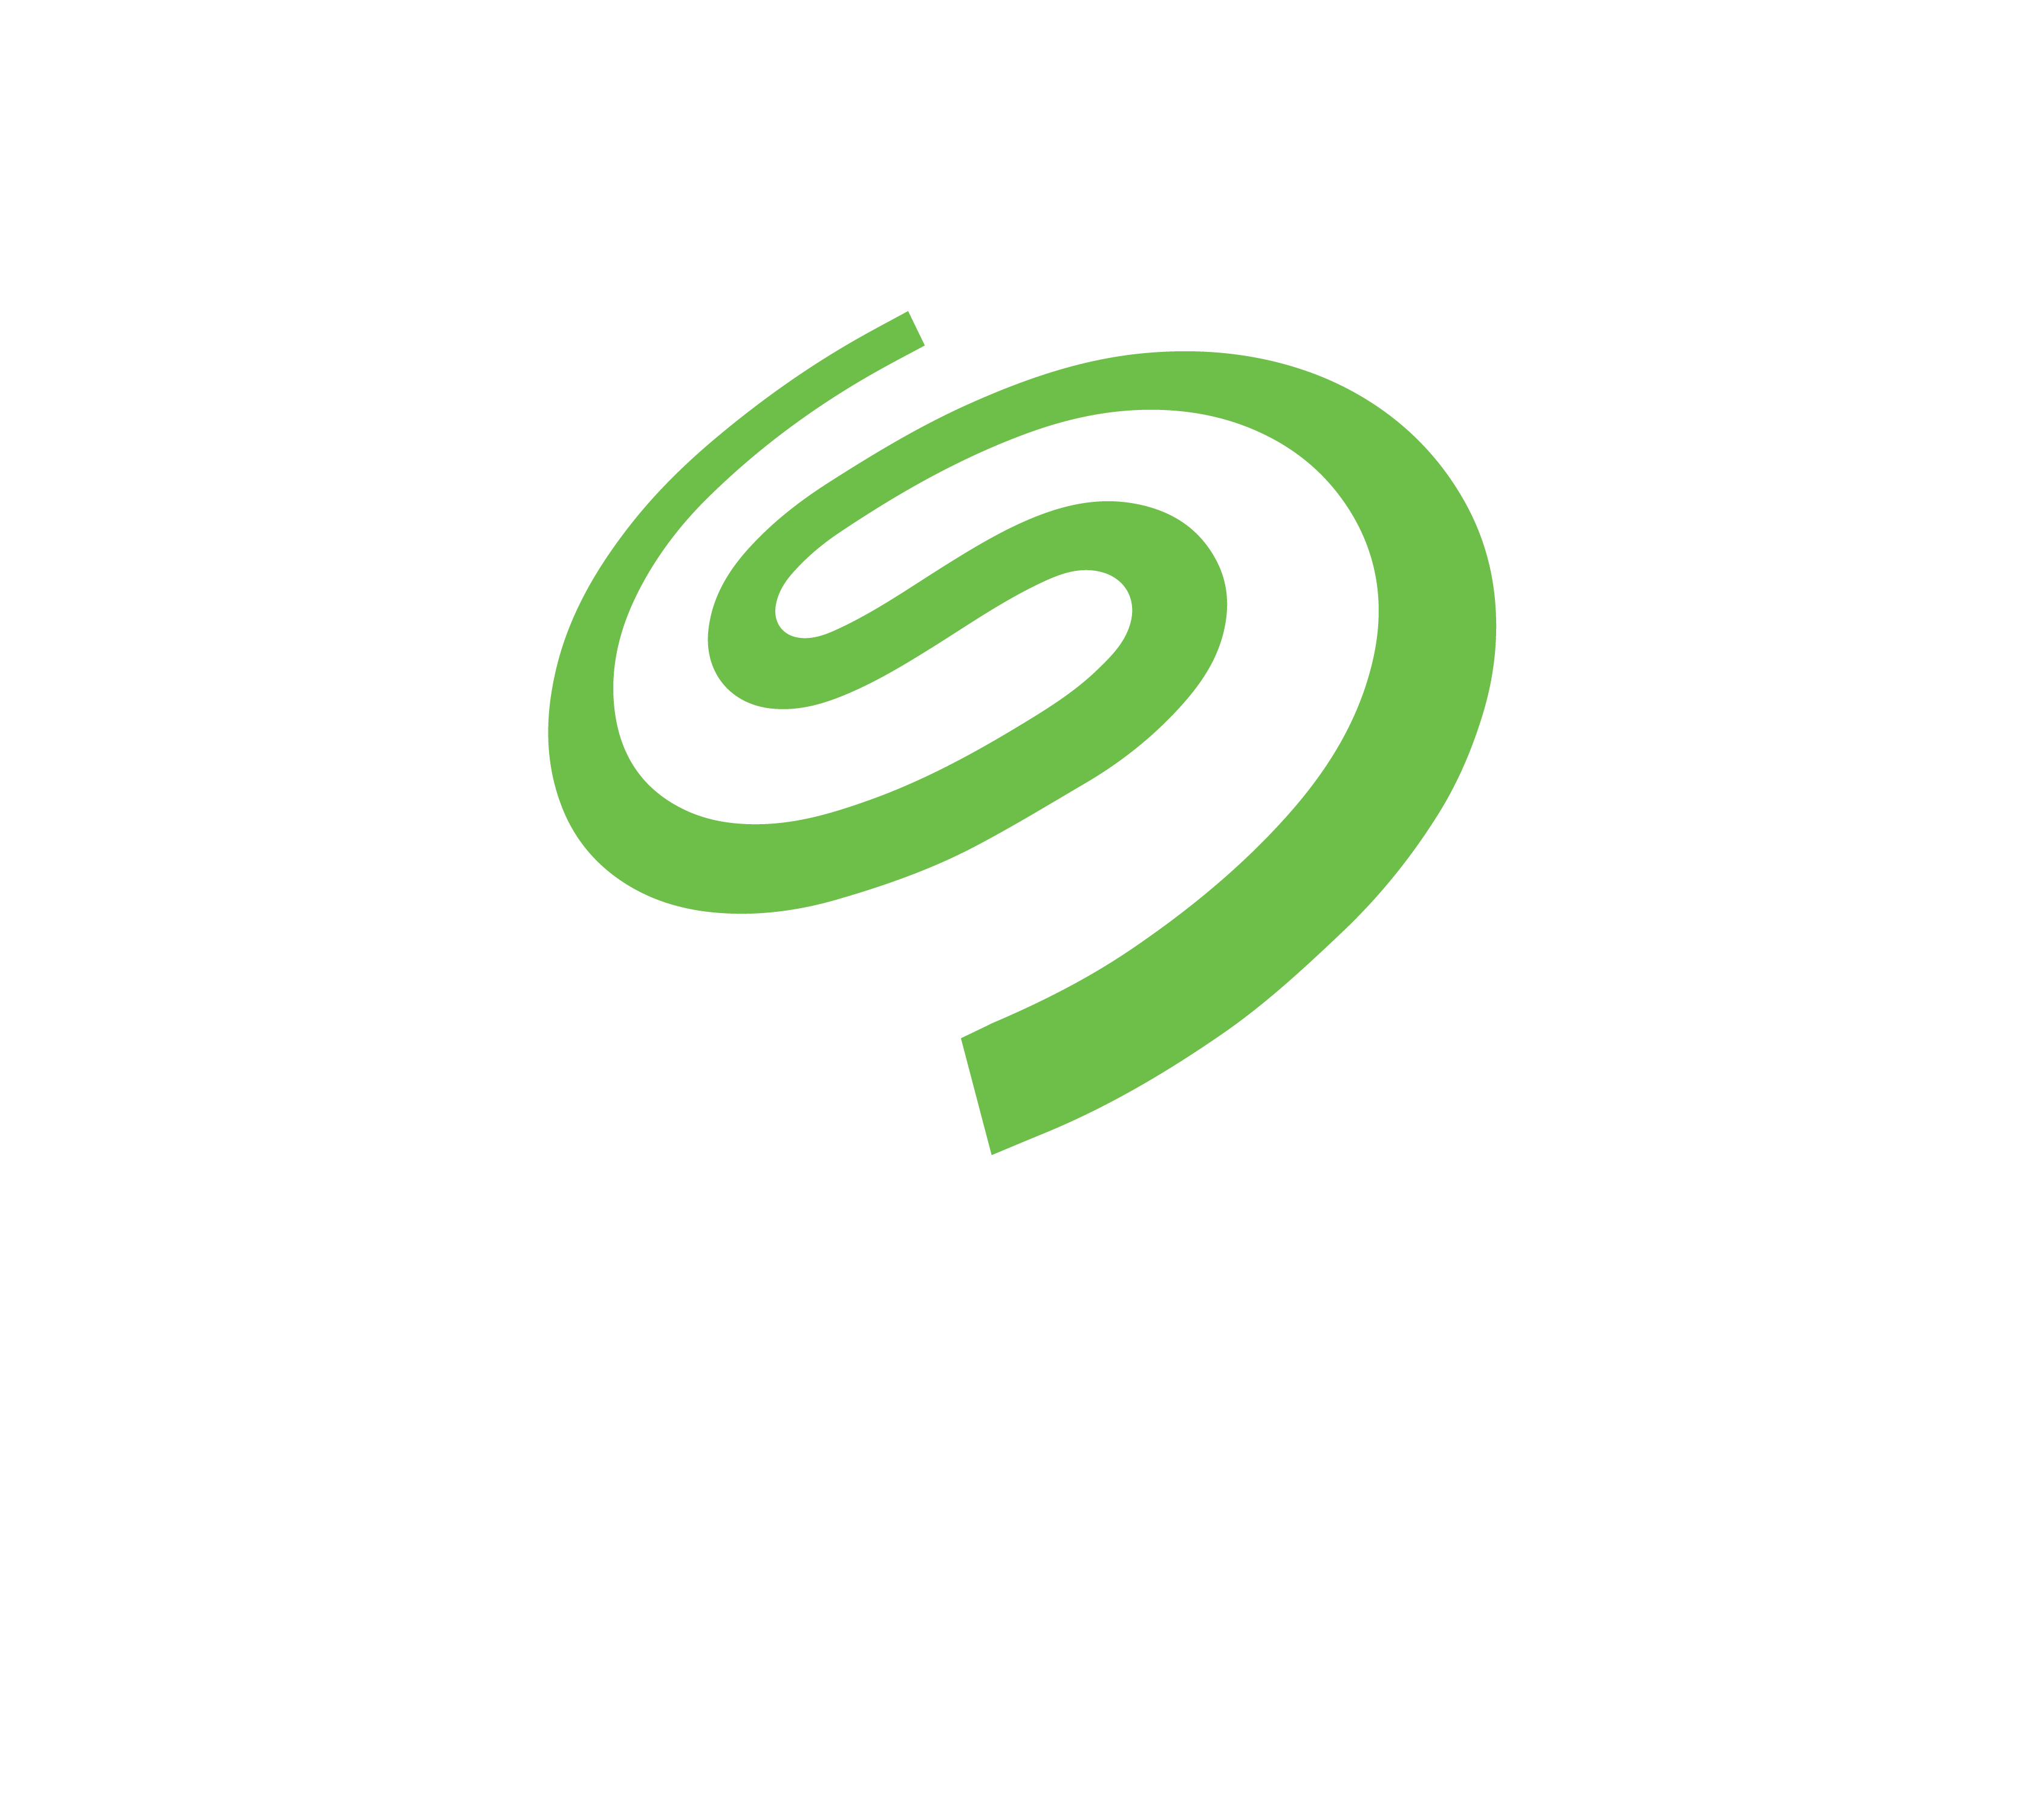 DiGiCOR Seagate Partner